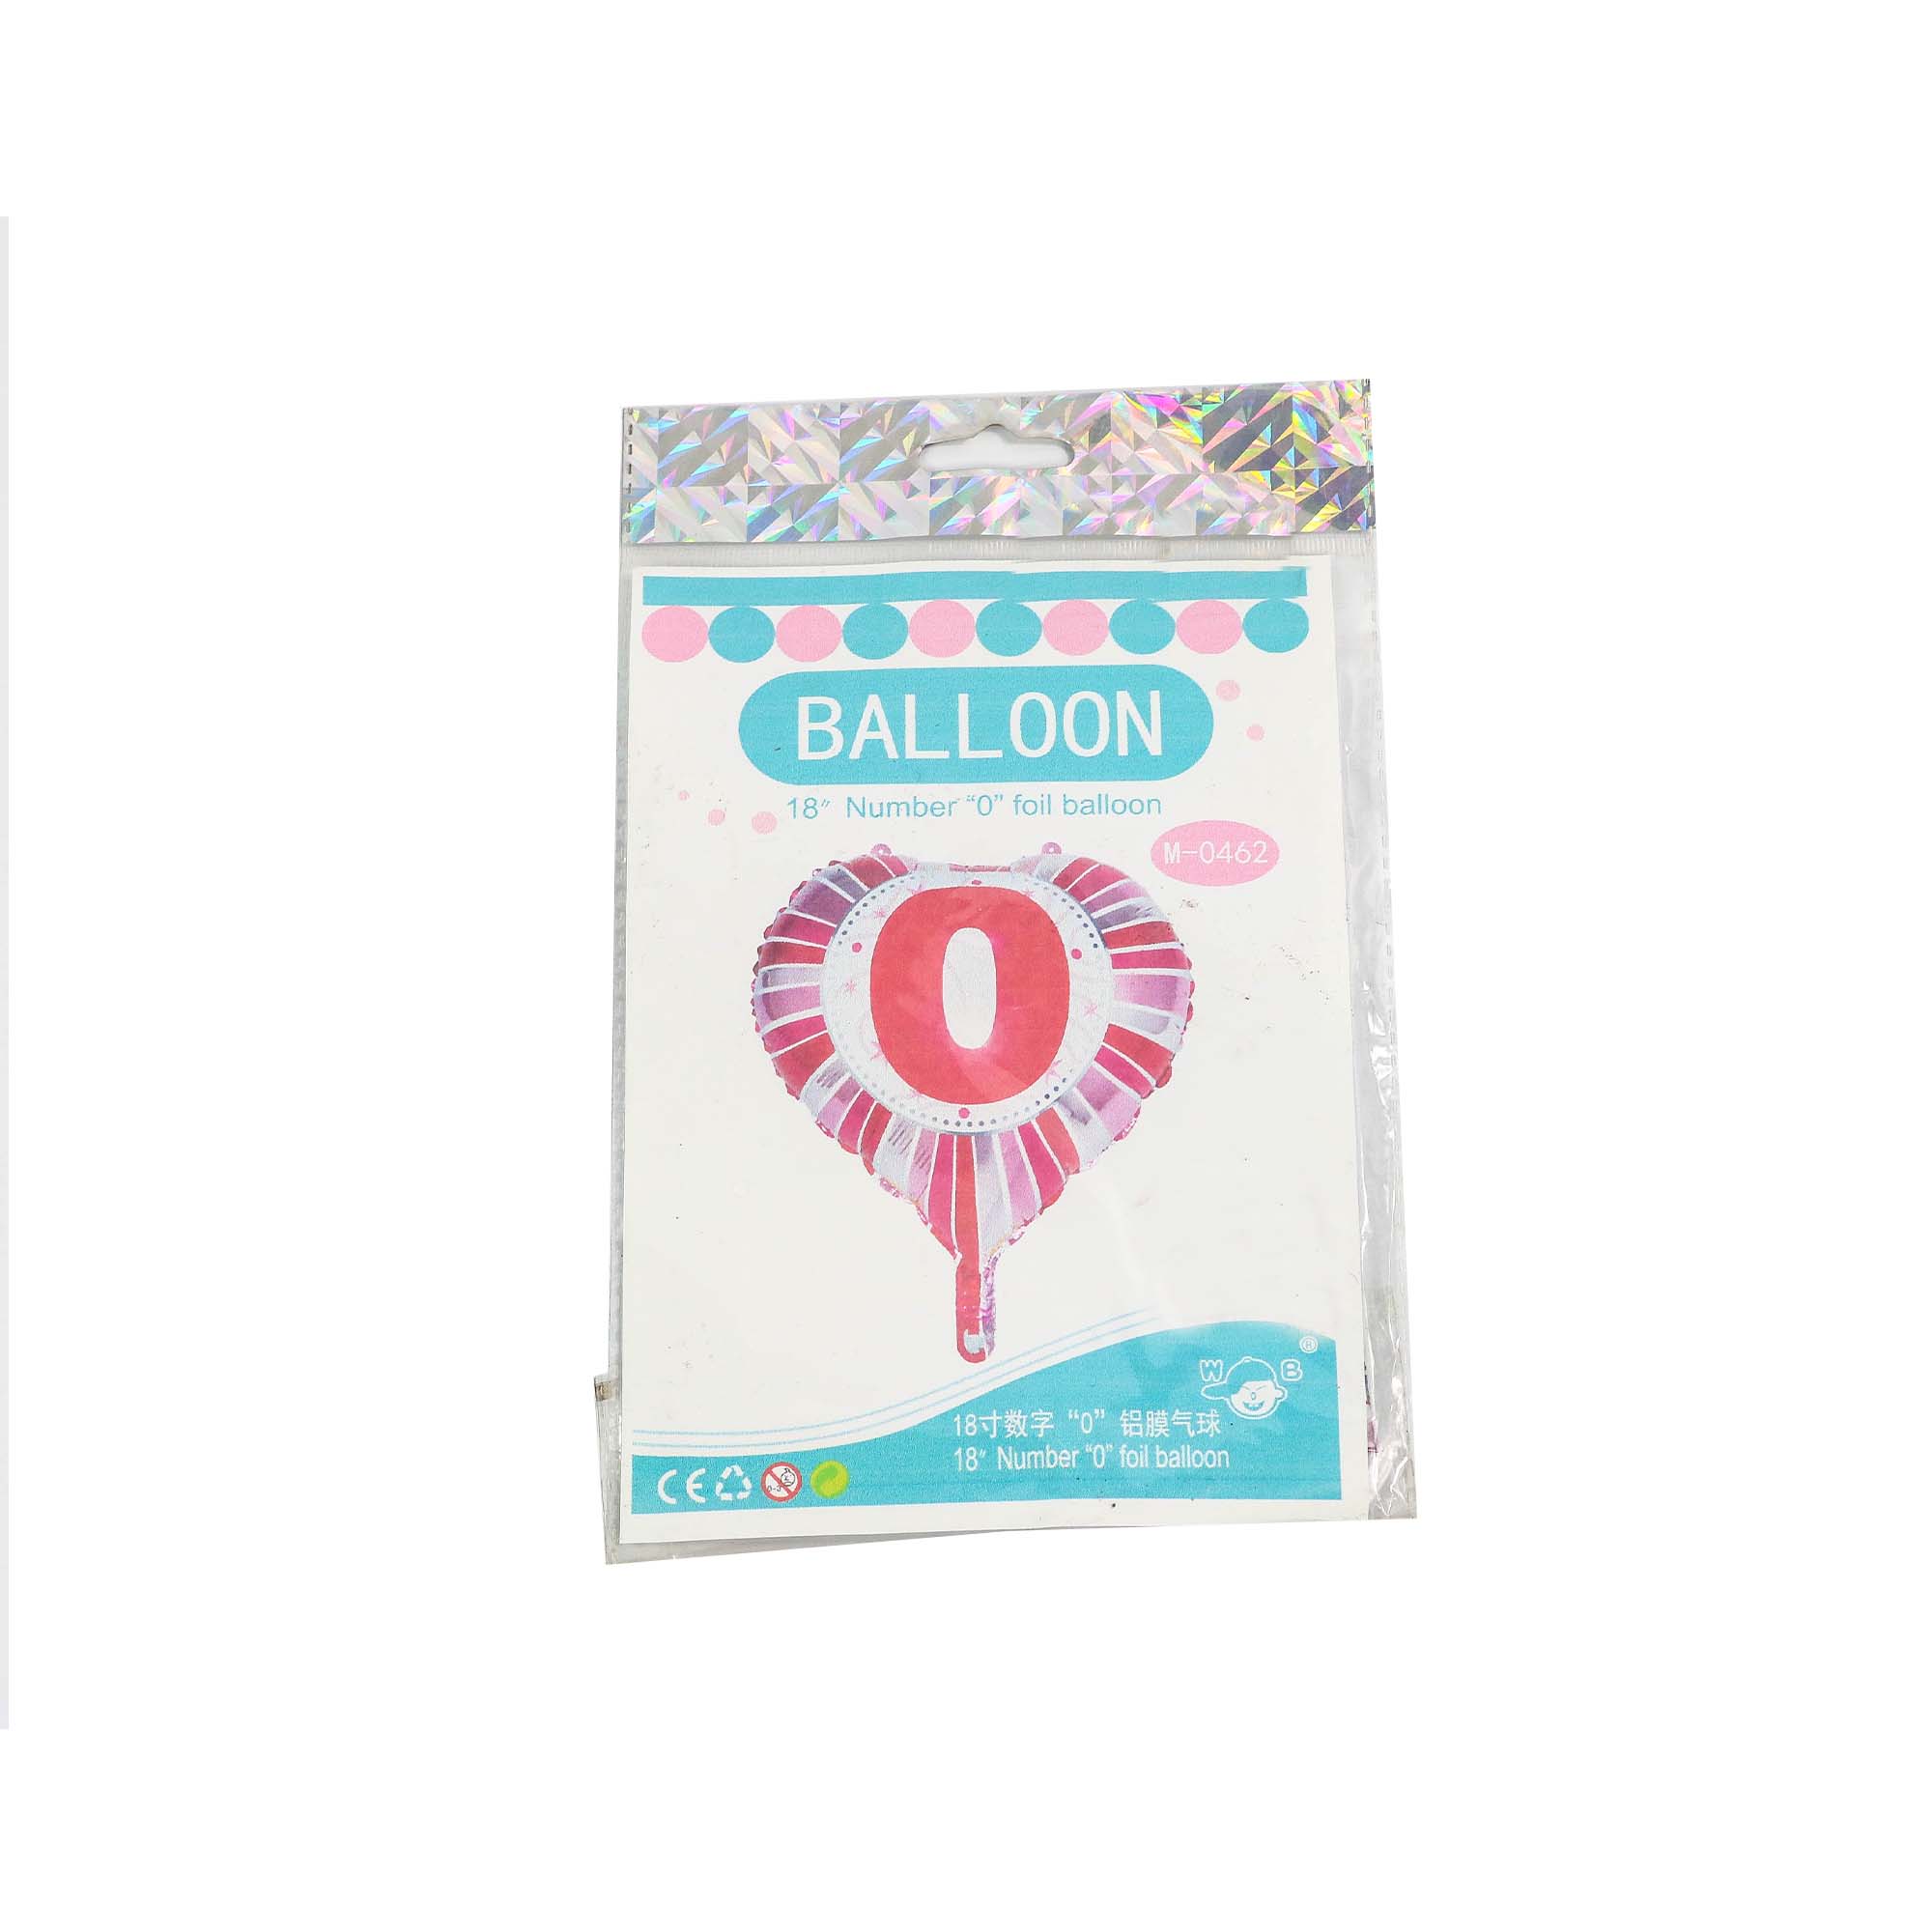 Balloon Foil Number 2 45cm 31815772 Em